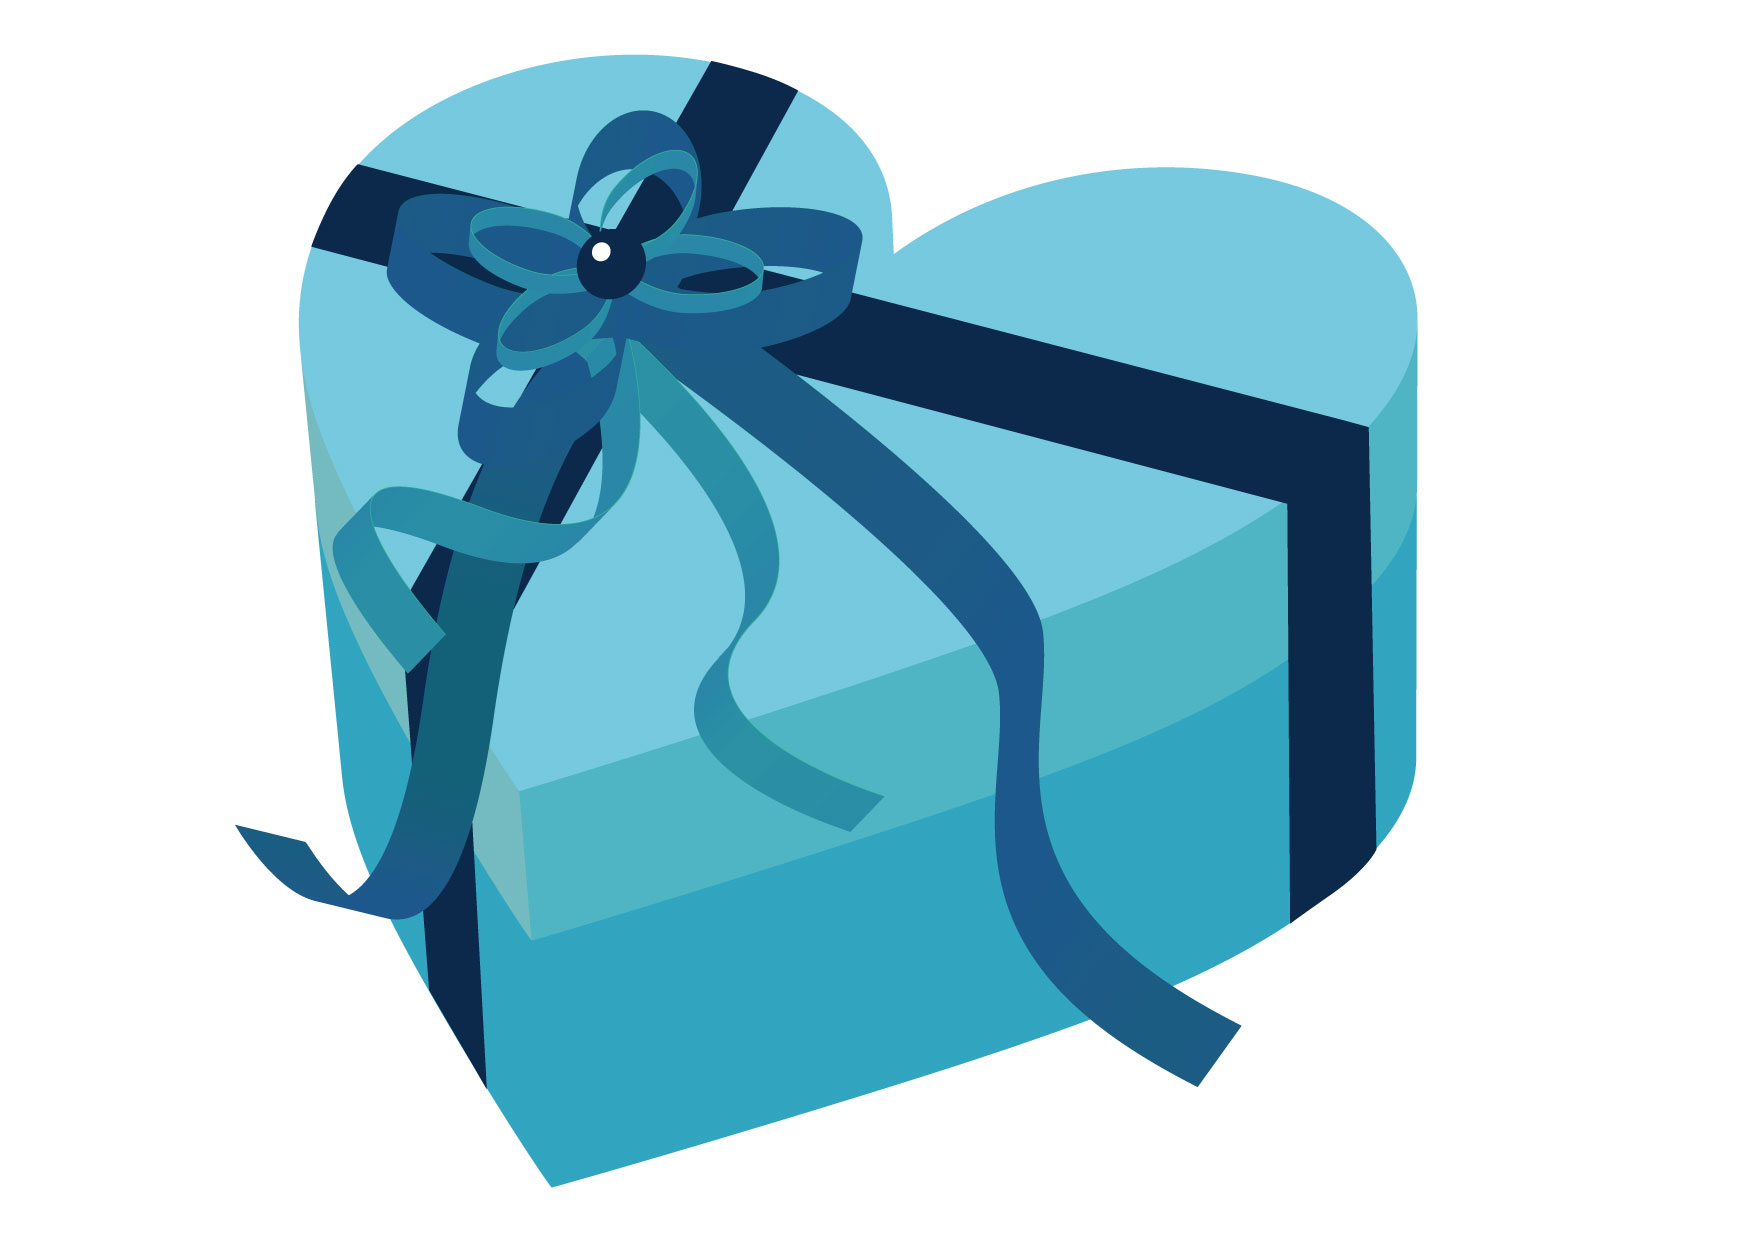 可愛いイラスト無料 バレンタイン ハート ブルー 箱 Free Illustration Valentine Heart Blue Box イラストダウンロード